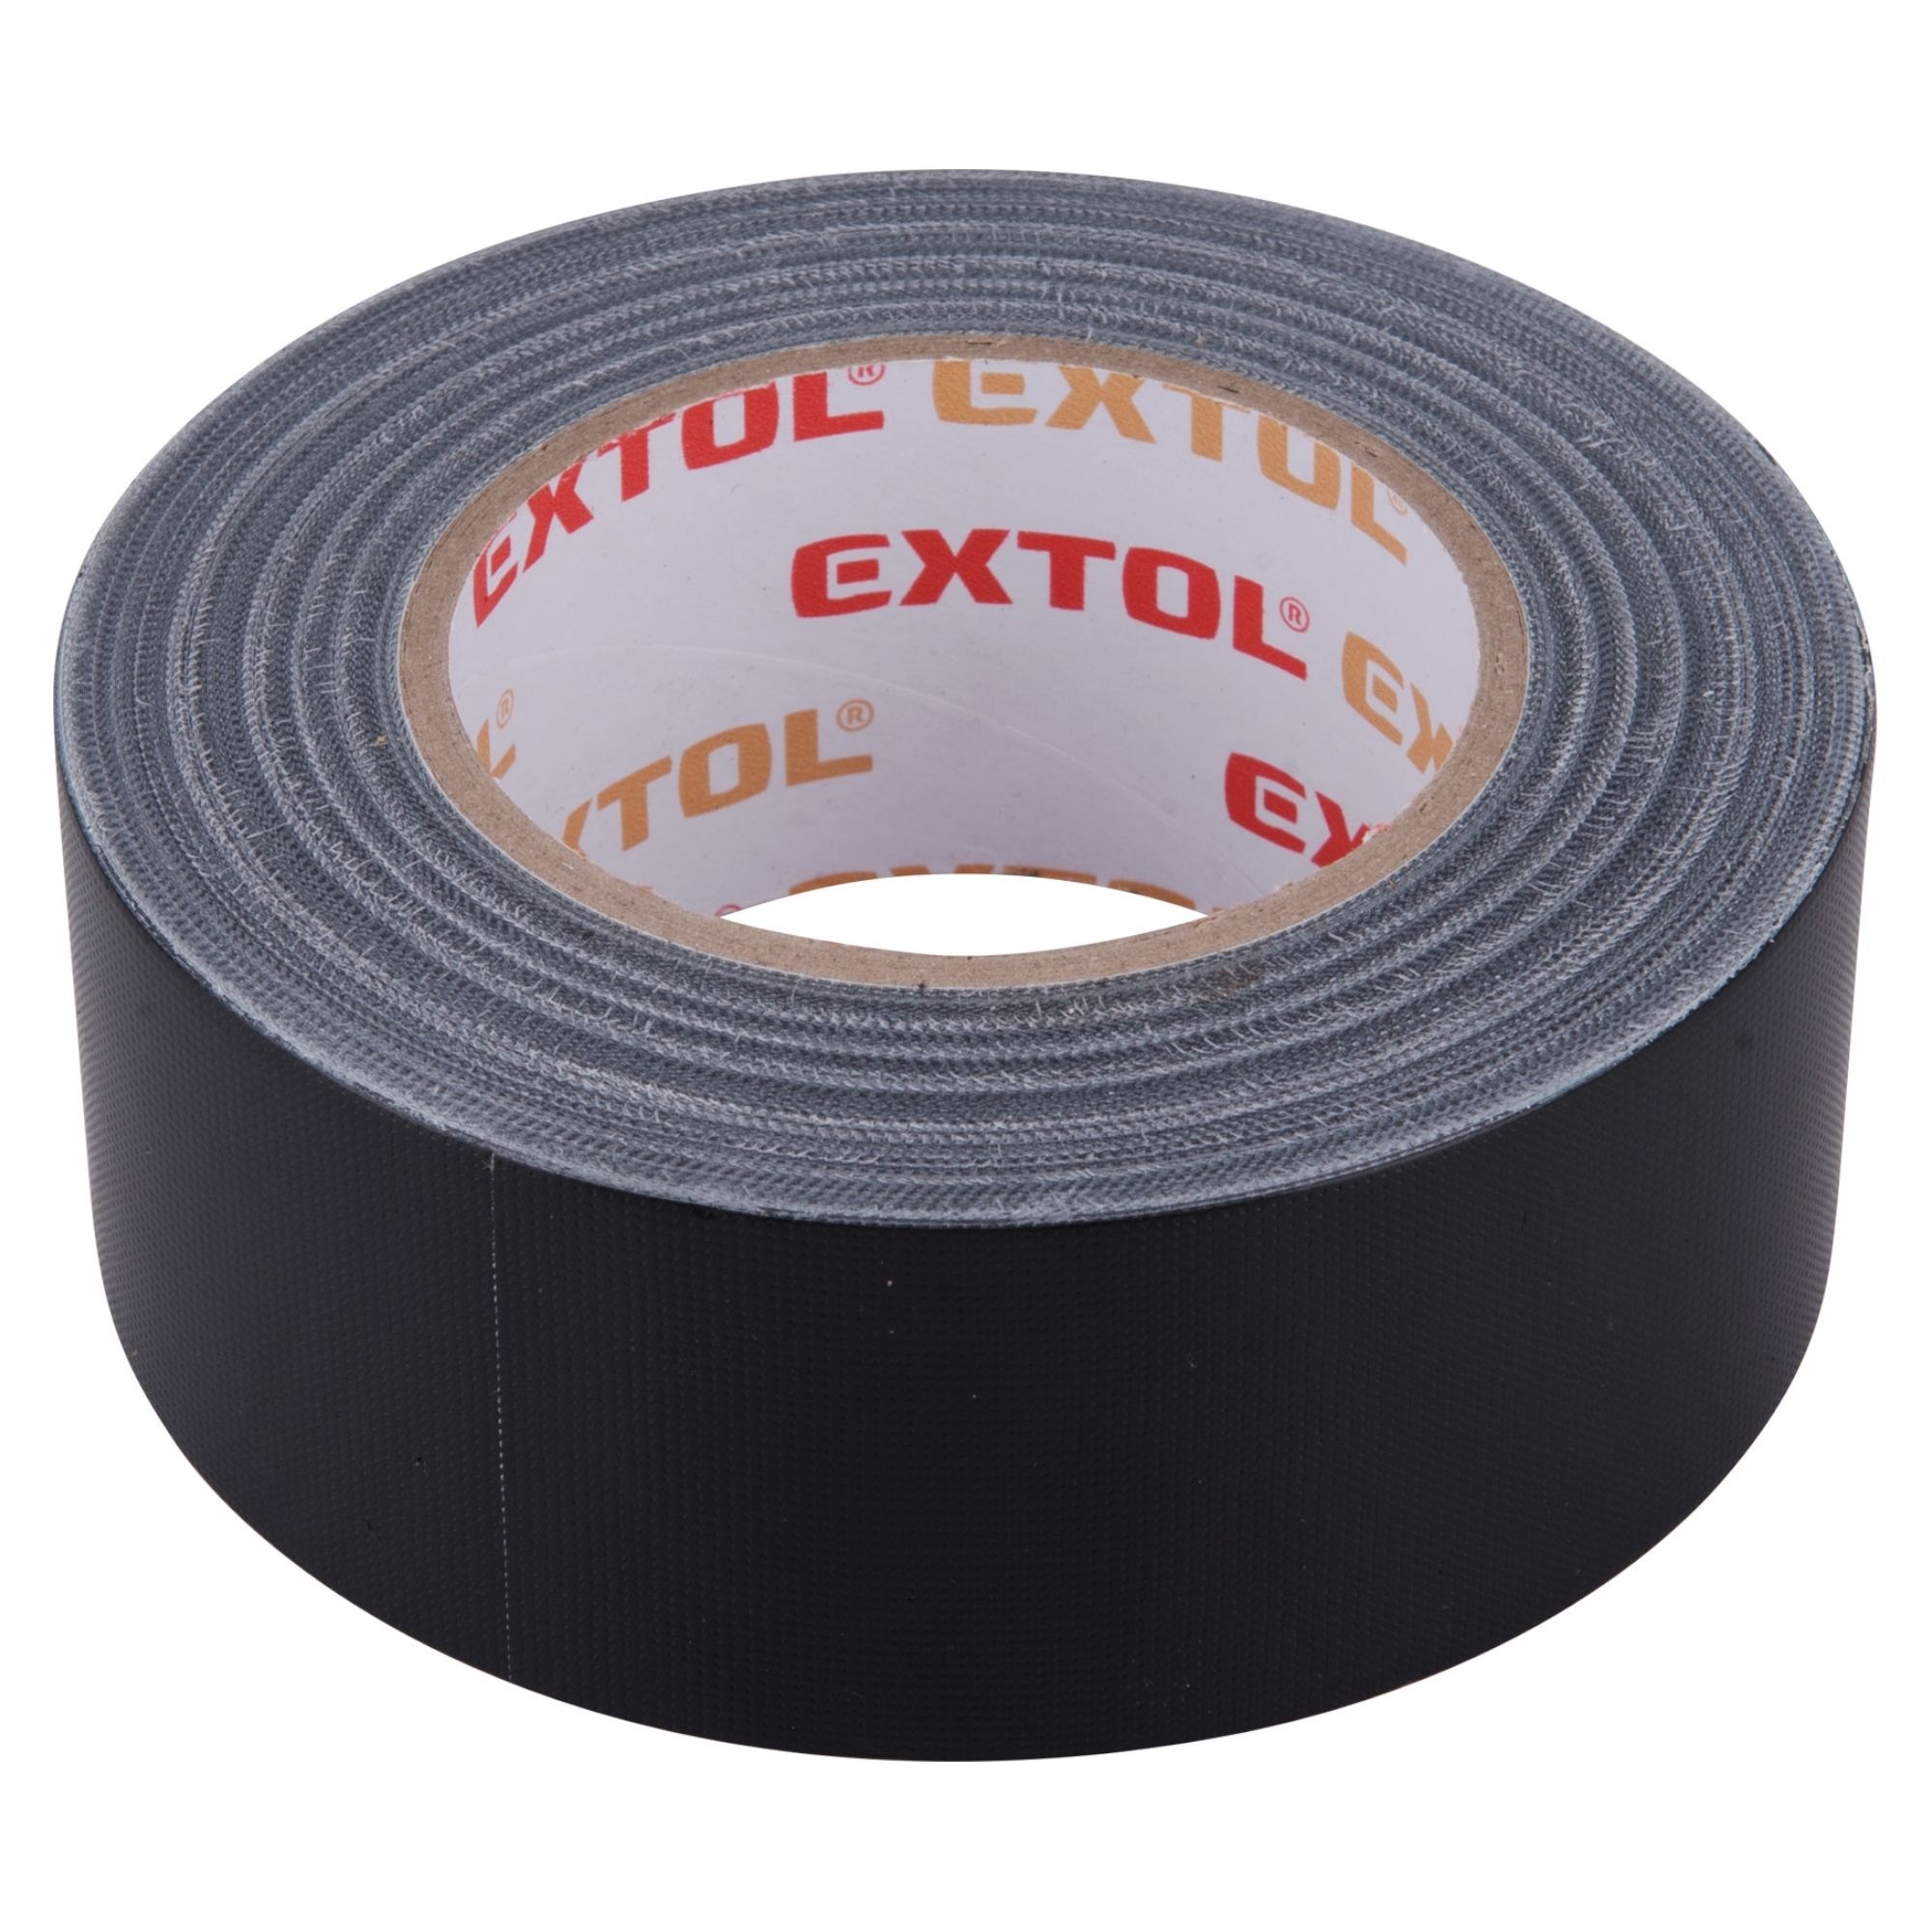 EXTOL PREMIUM 8856313 Páska univerzální DUCT TAPE, 50mm x 50m, 0,18mm, černá